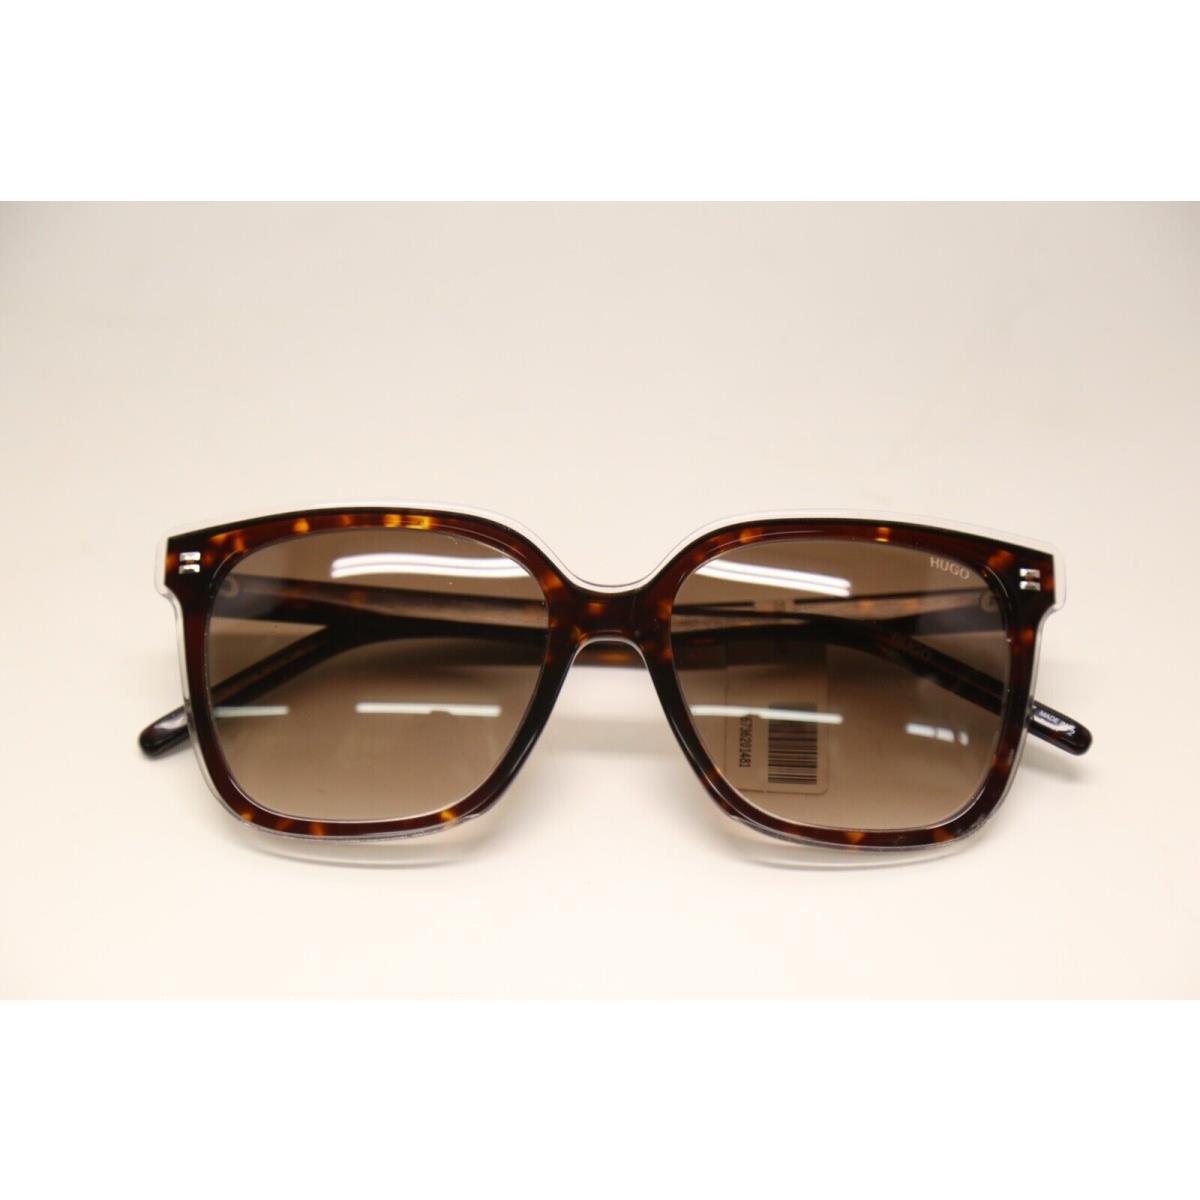 Hugo Boss sunglasses  - Brown Havana Frame, Brown Lens 5